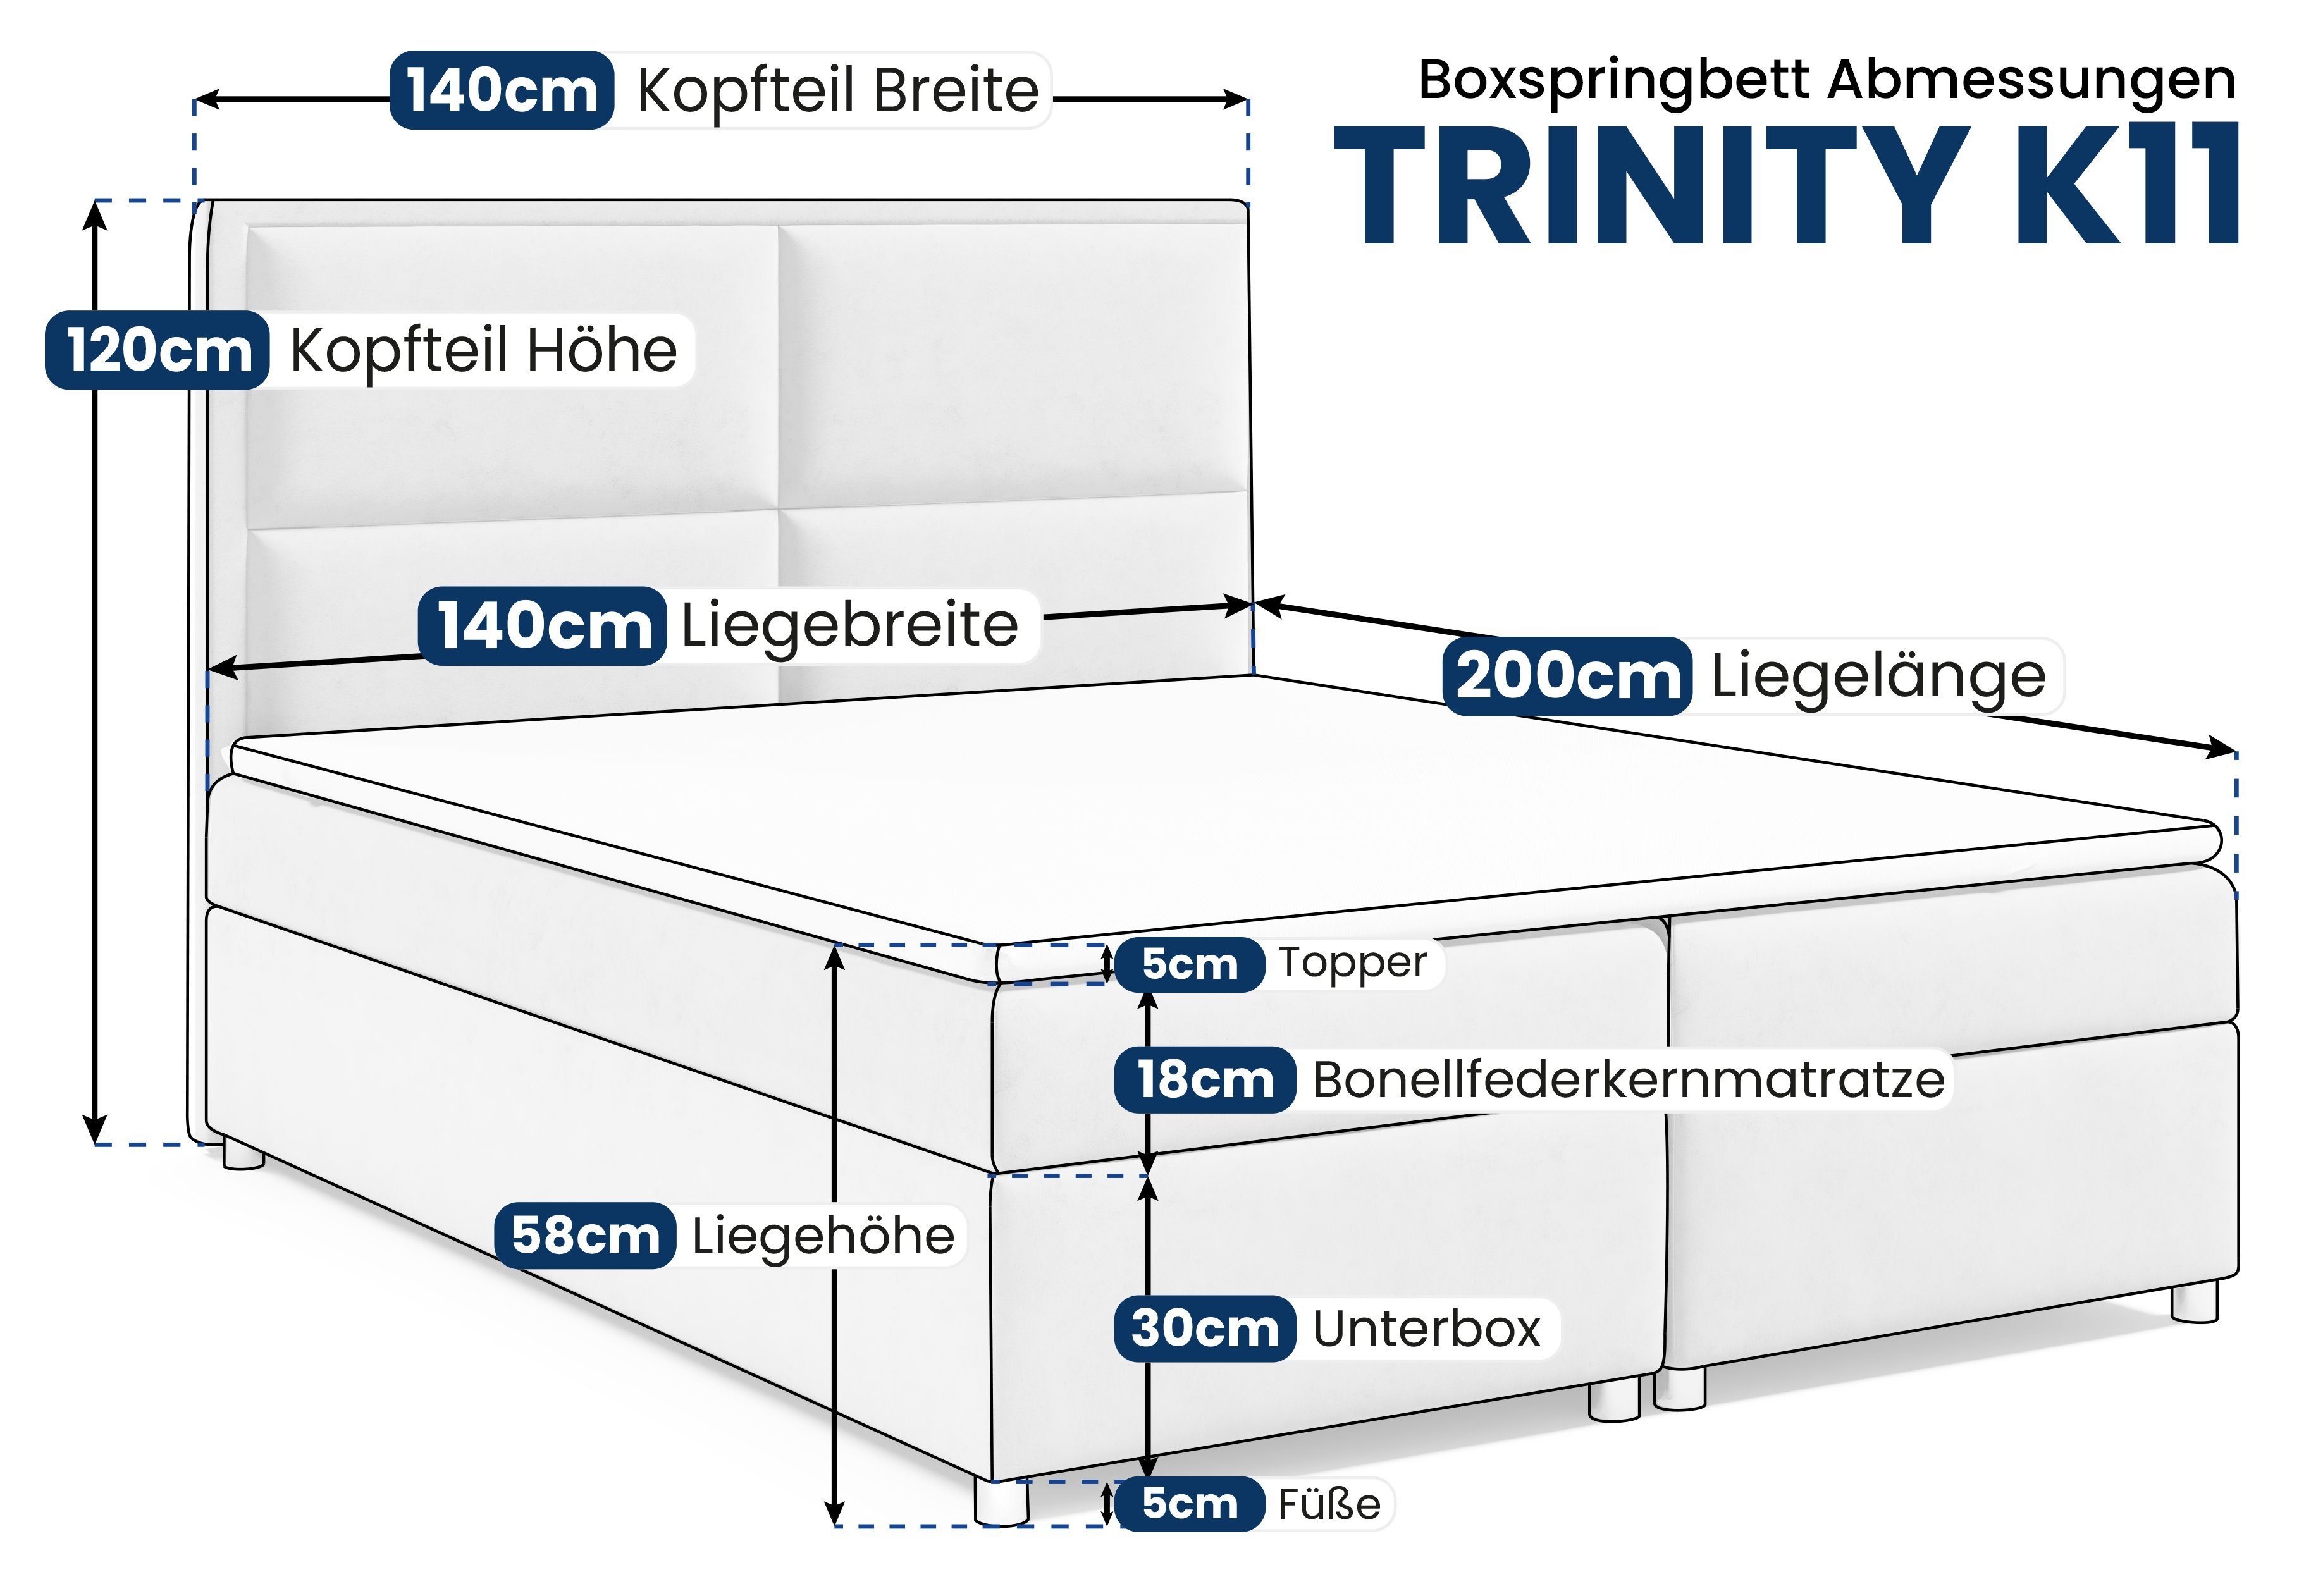 Best for Home Boxspringbett Trinity Türkis Bettkasten und Topper mit K11